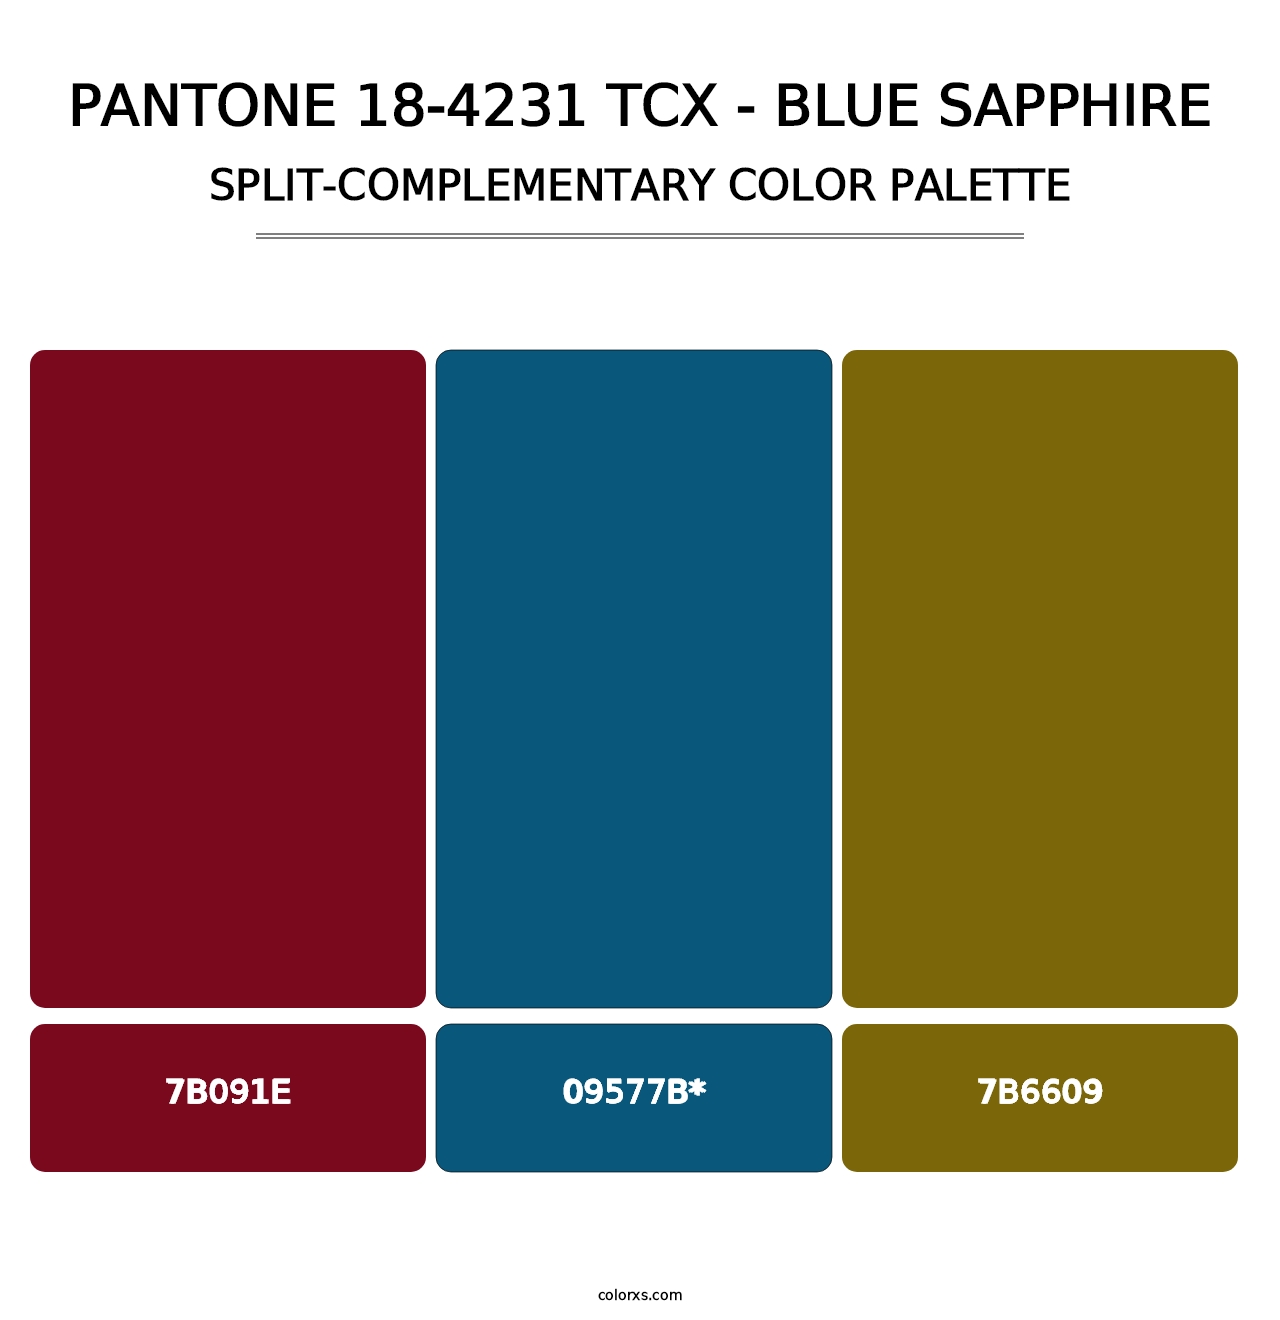 PANTONE 18-4231 TCX - Blue Sapphire - Split-Complementary Color Palette